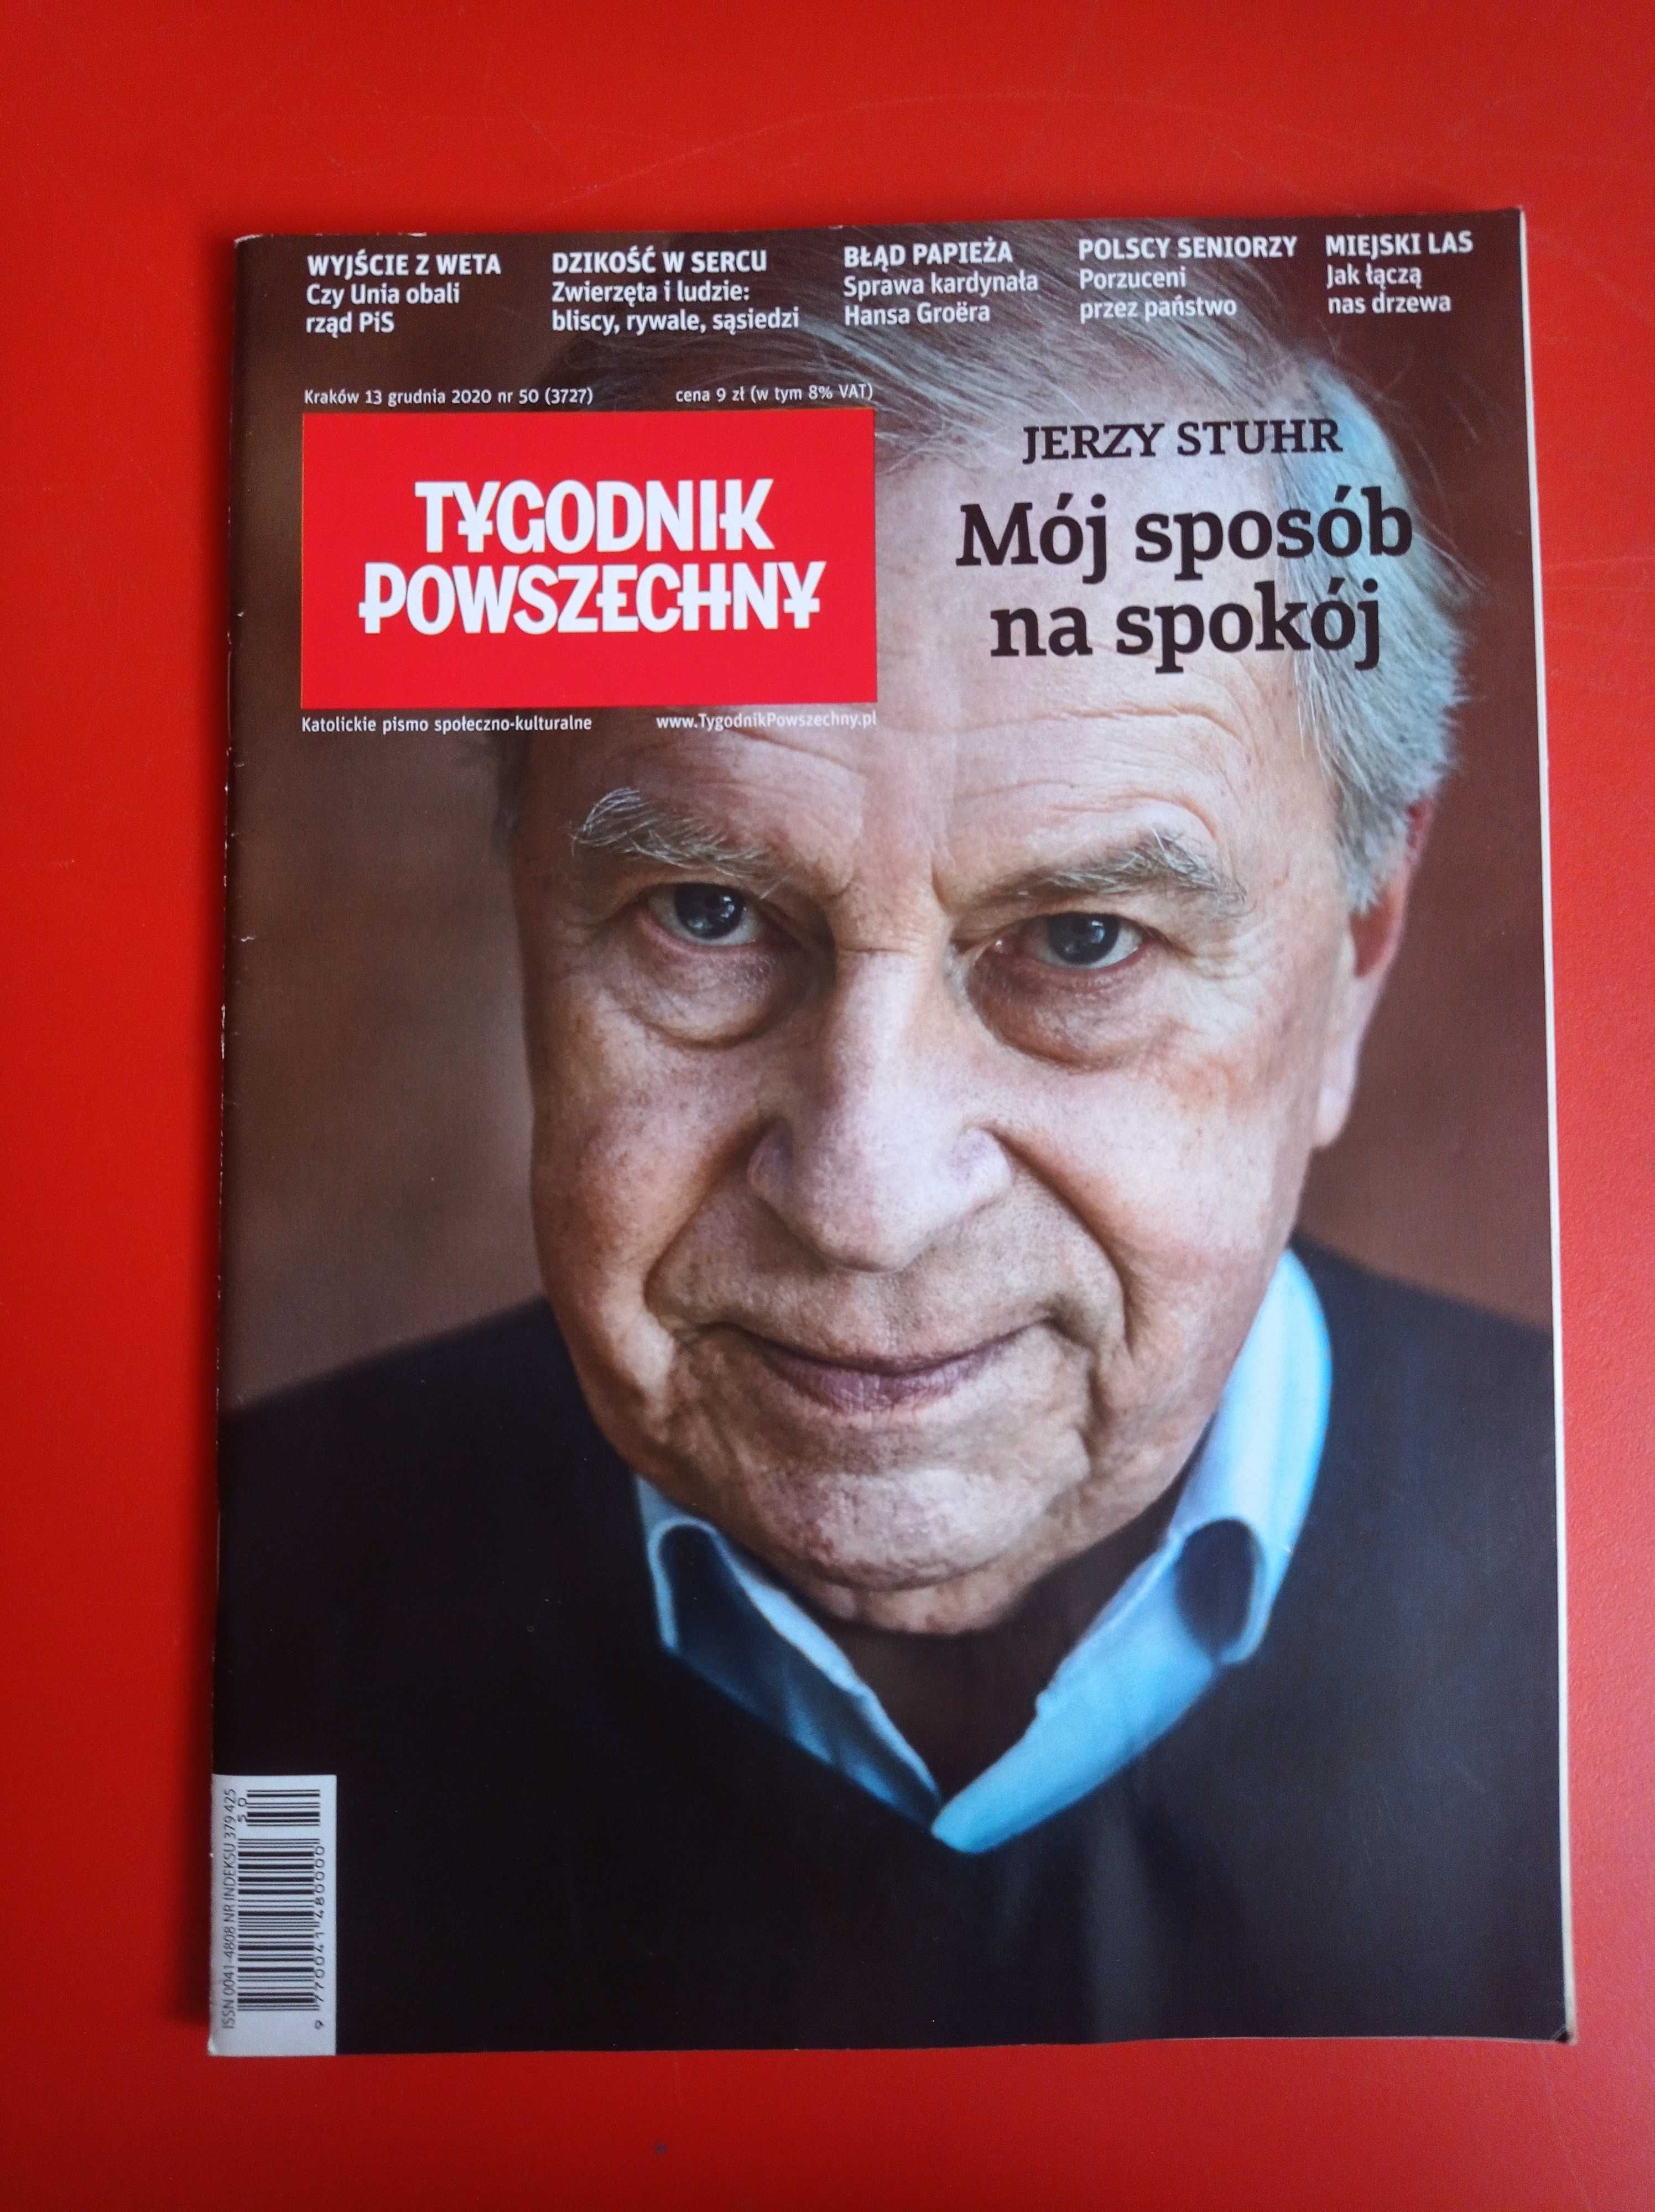 Tygodnik Powszechny nr 50 / 2020, 13 grudnia 2020, Jerzy Stuhr